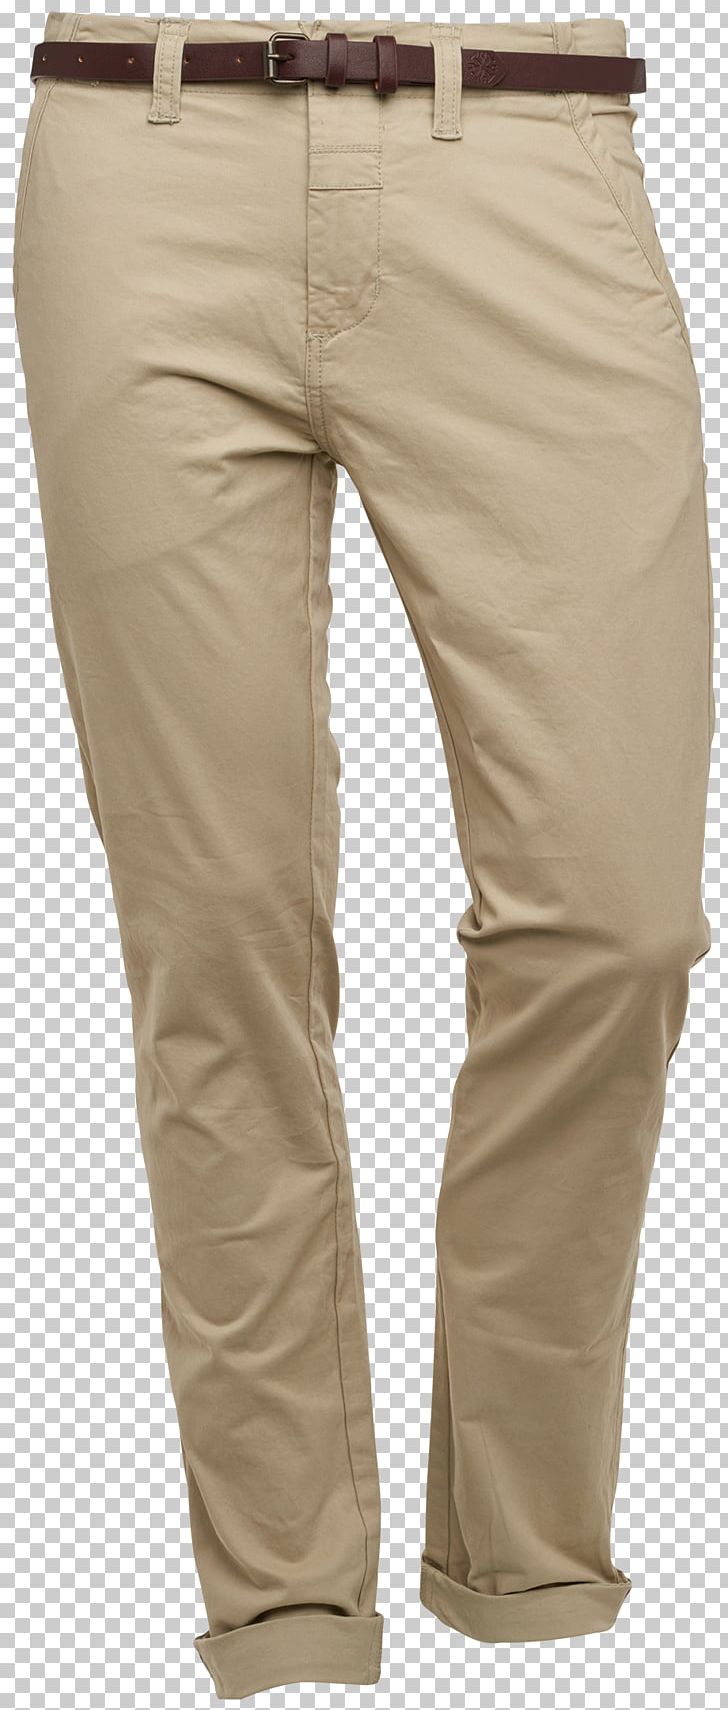 Khaki Pants Beige Jeans PNG, Clipart, Beige, Clothing, Jeans, Khaki, Pants Free PNG Download